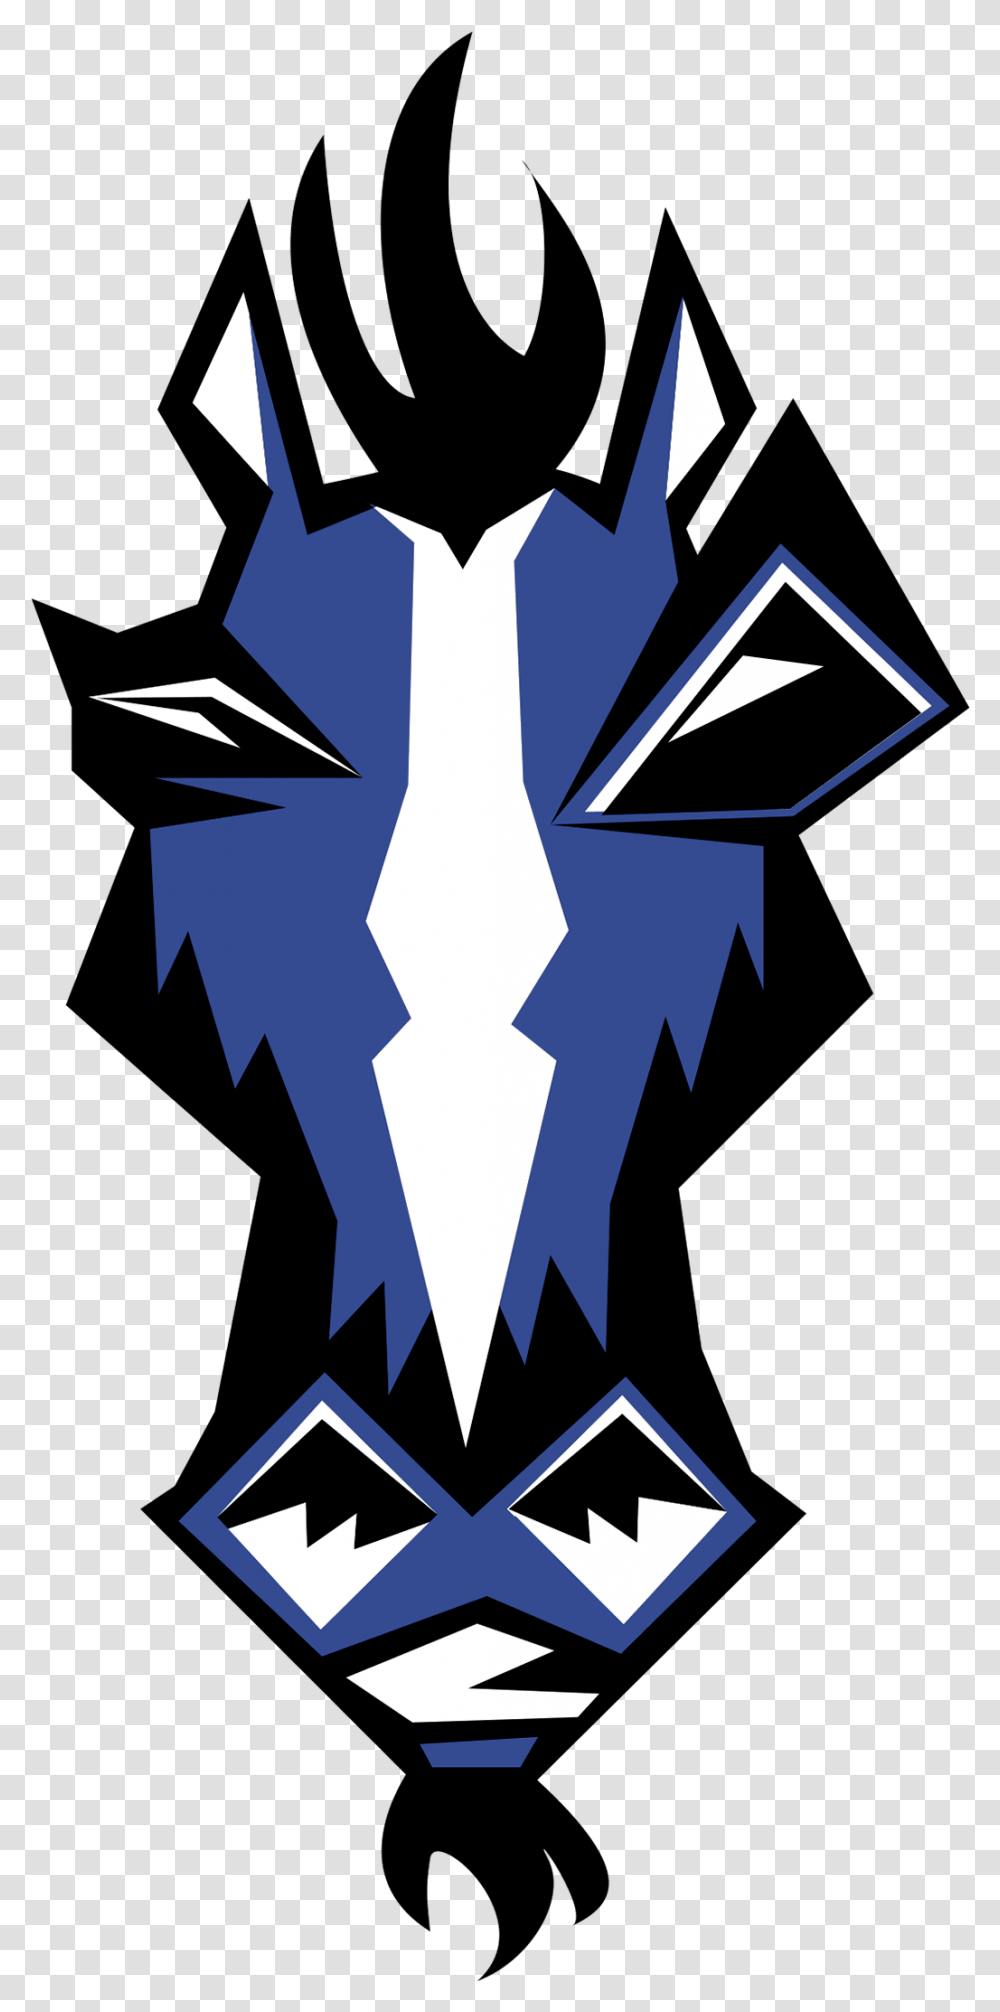 Indianapolis Colts 2 Logo Indianapolis Colts Logos Clip Art, Emblem, Weapon, Weaponry Transparent Png